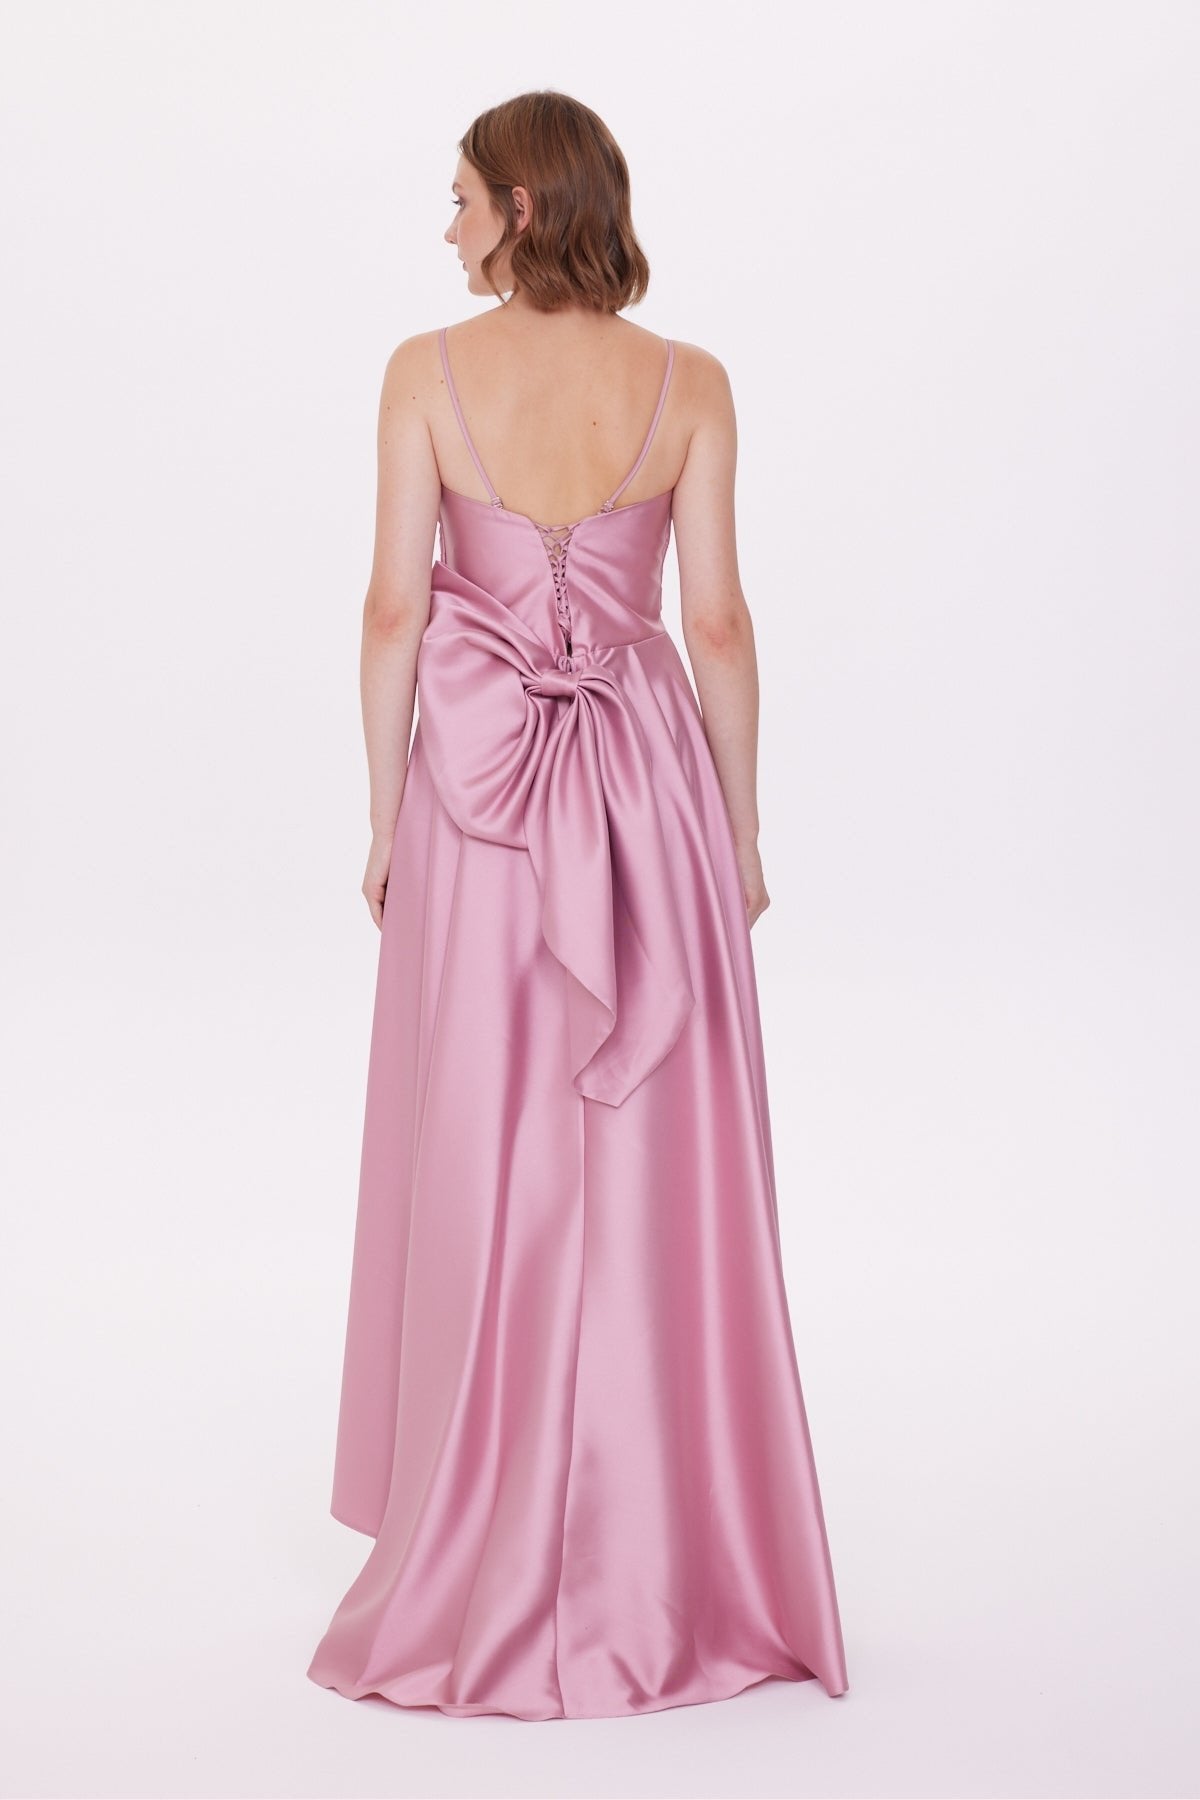 Sweetheart Neckline Chest Sequin Drape Detailed Dress